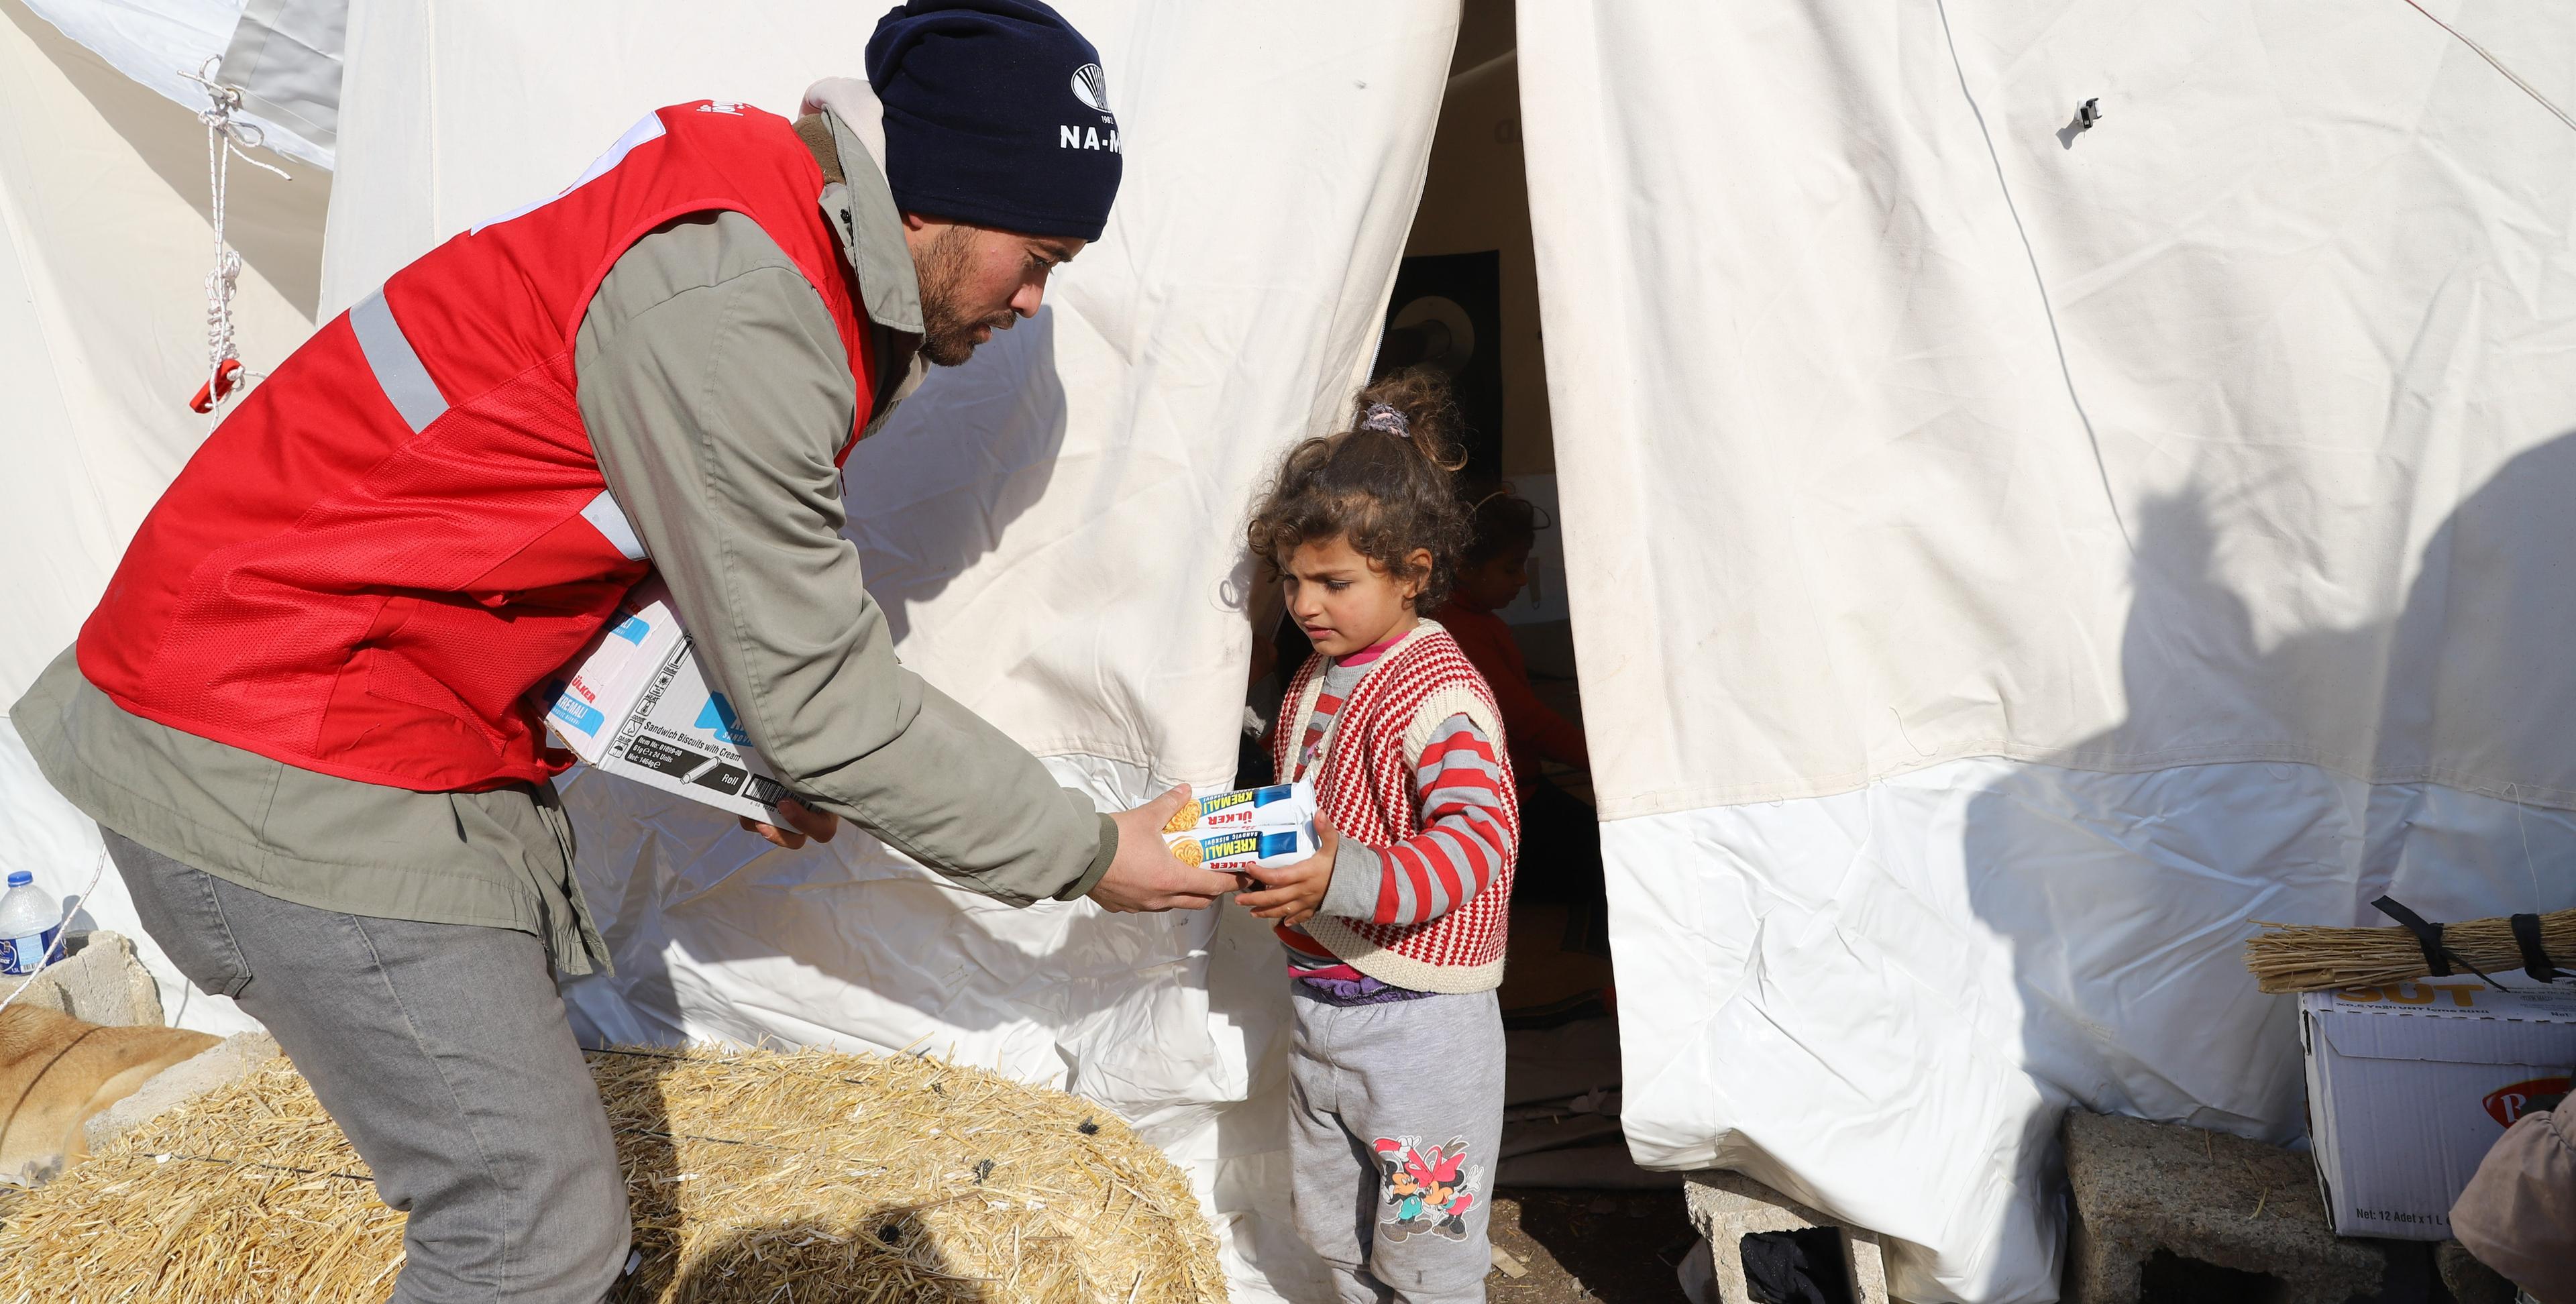 Un bénévole de la Croix-Rouge remet de la nourriture à un enfant devant la tente.